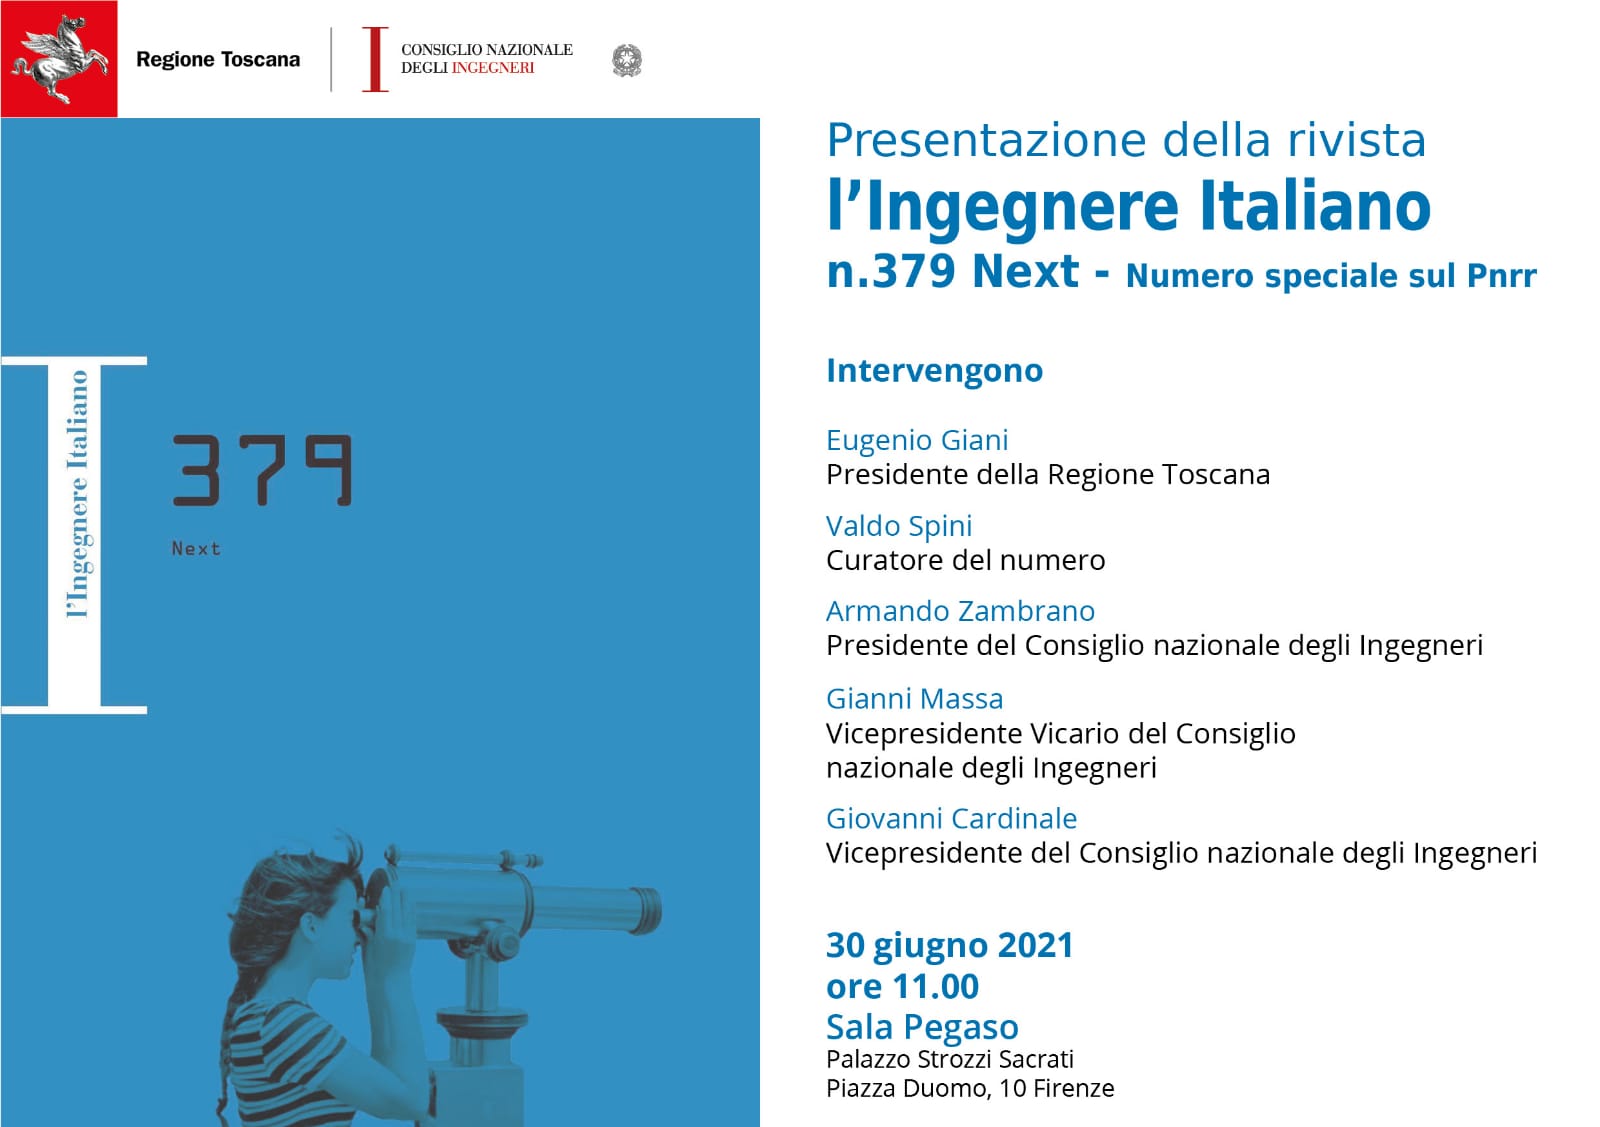 Monografia della rivista ‘L’ingegnere italiano’ dedicata al Pnrr, il 30 giugno la presentazione